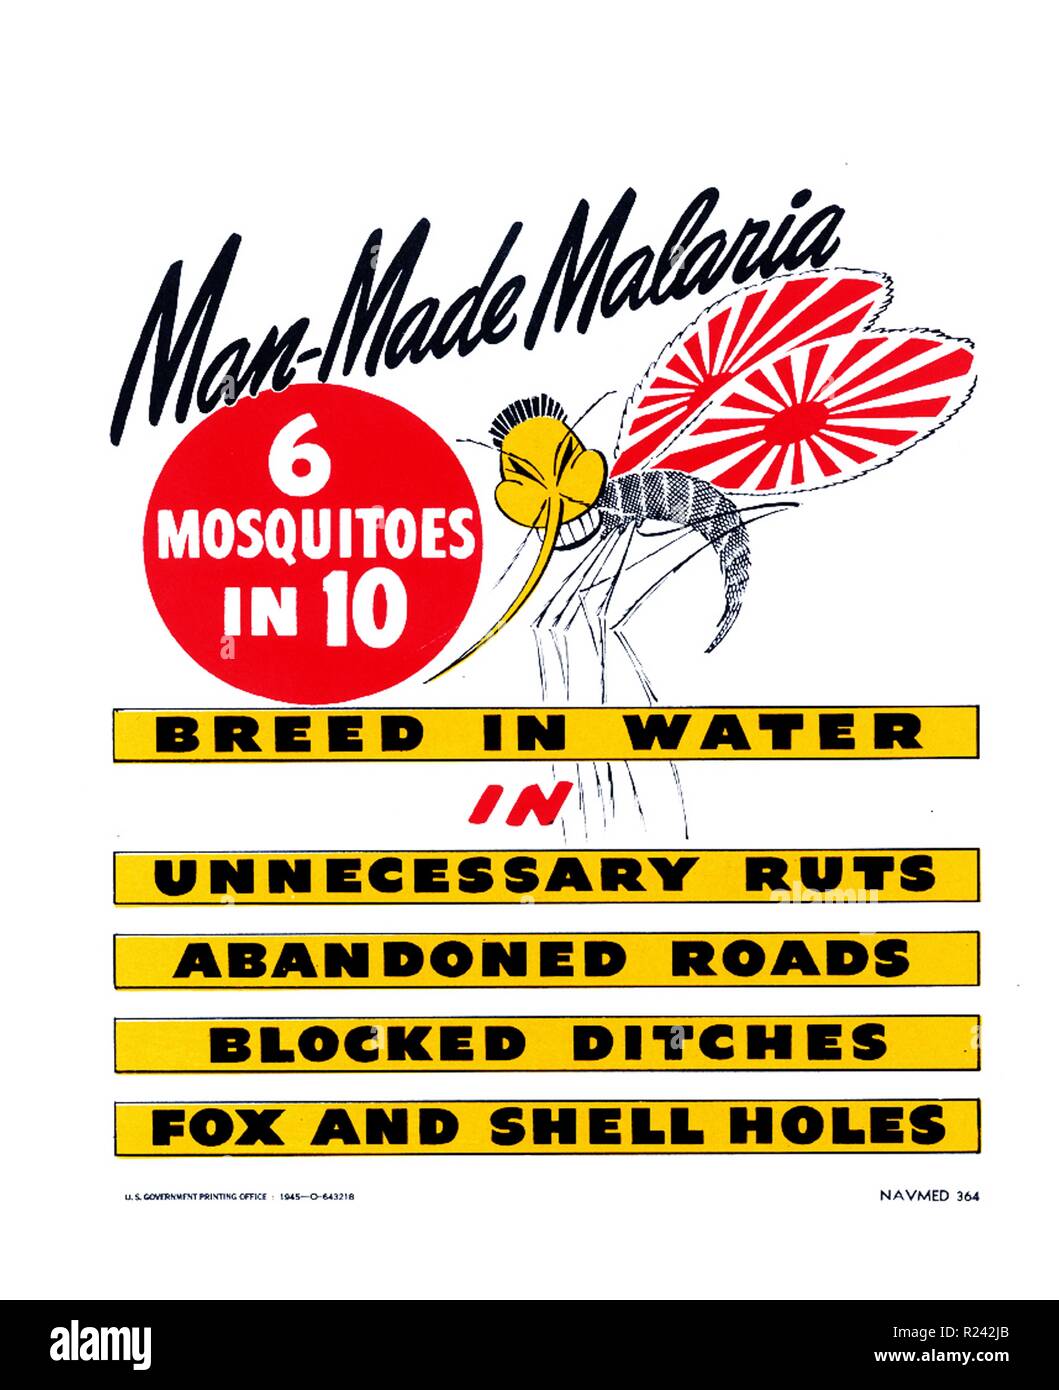 Man-Made Malaria. 6 Moskitos in 10 Rasse in Wasser in unnötige Furchen, verlassene Straßen blockiert, Gräben, Fox und Shell Löcher. U.S. Navy, Büro der Medizin & Chirurgie, U.S. Government Printing Office, USA, 1945 Krieg - Zeit US-Militär Gesundheit Kampagnen oft verschmolzen die Japanische Feind mit der Krankheit - die Fliegen und Mücken. Hier wird eine Anopheles-mücke ist die stereotype Merkmale der japanischen Feind gegeben und hat die aufgehende Sonne der japanischen kaiserlichen Flagge Stockfoto